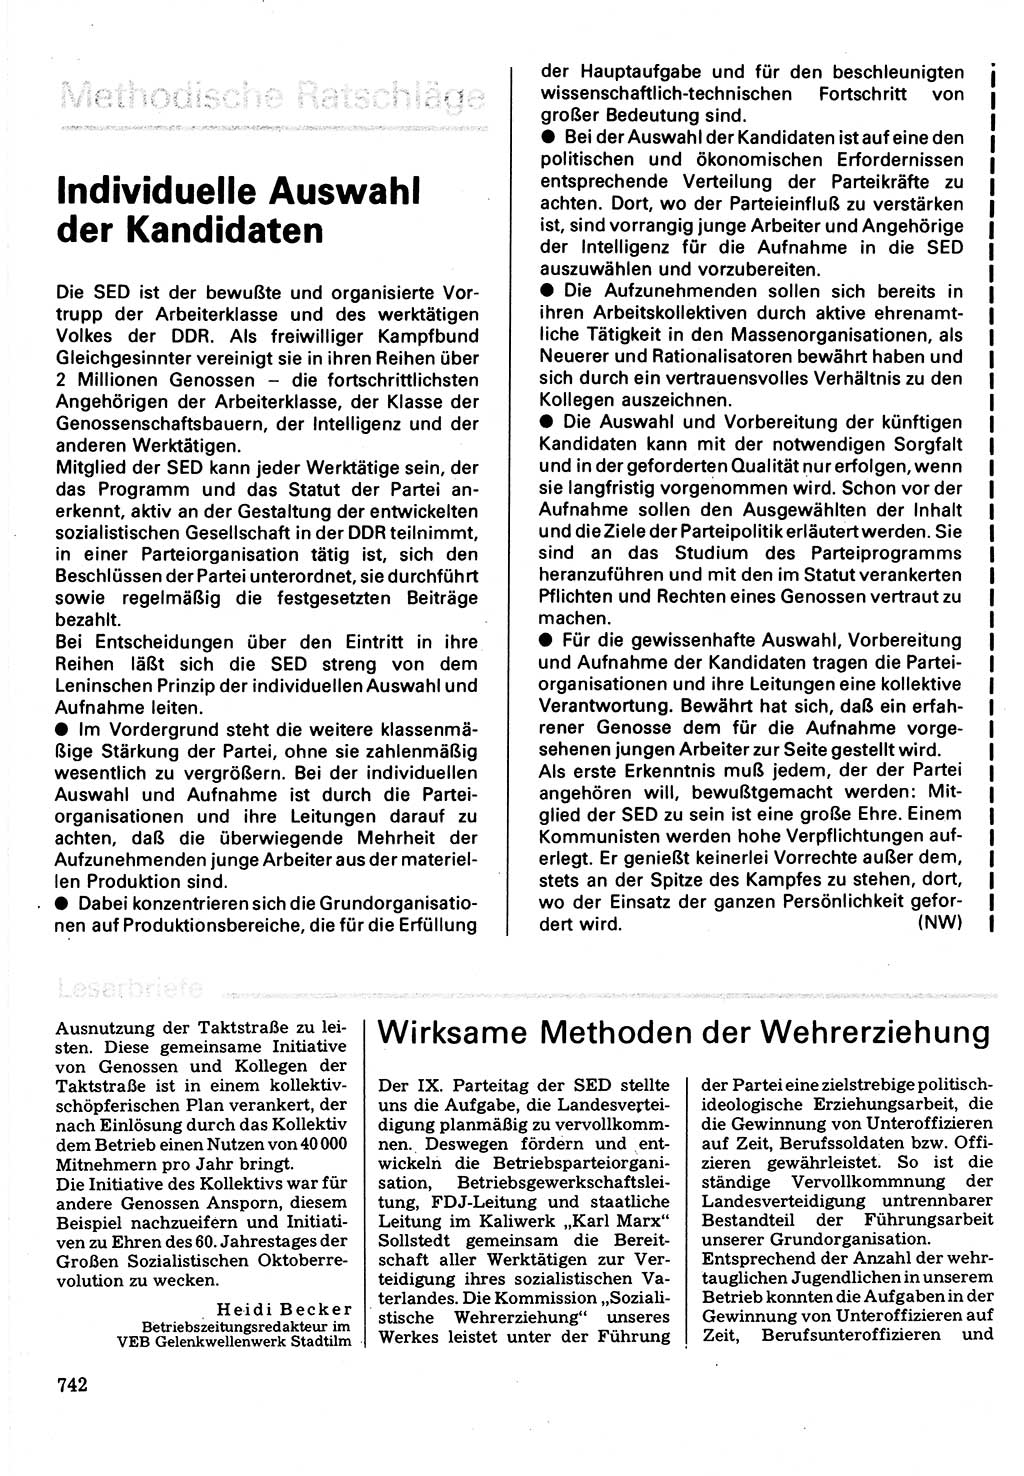 Neuer Weg (NW), Organ des Zentralkomitees (ZK) der SED (Sozialistische Einheitspartei Deutschlands) für Fragen des Parteilebens, 32. Jahrgang [Deutsche Demokratische Republik (DDR)] 1977, Seite 742 (NW ZK SED DDR 1977, S. 742)